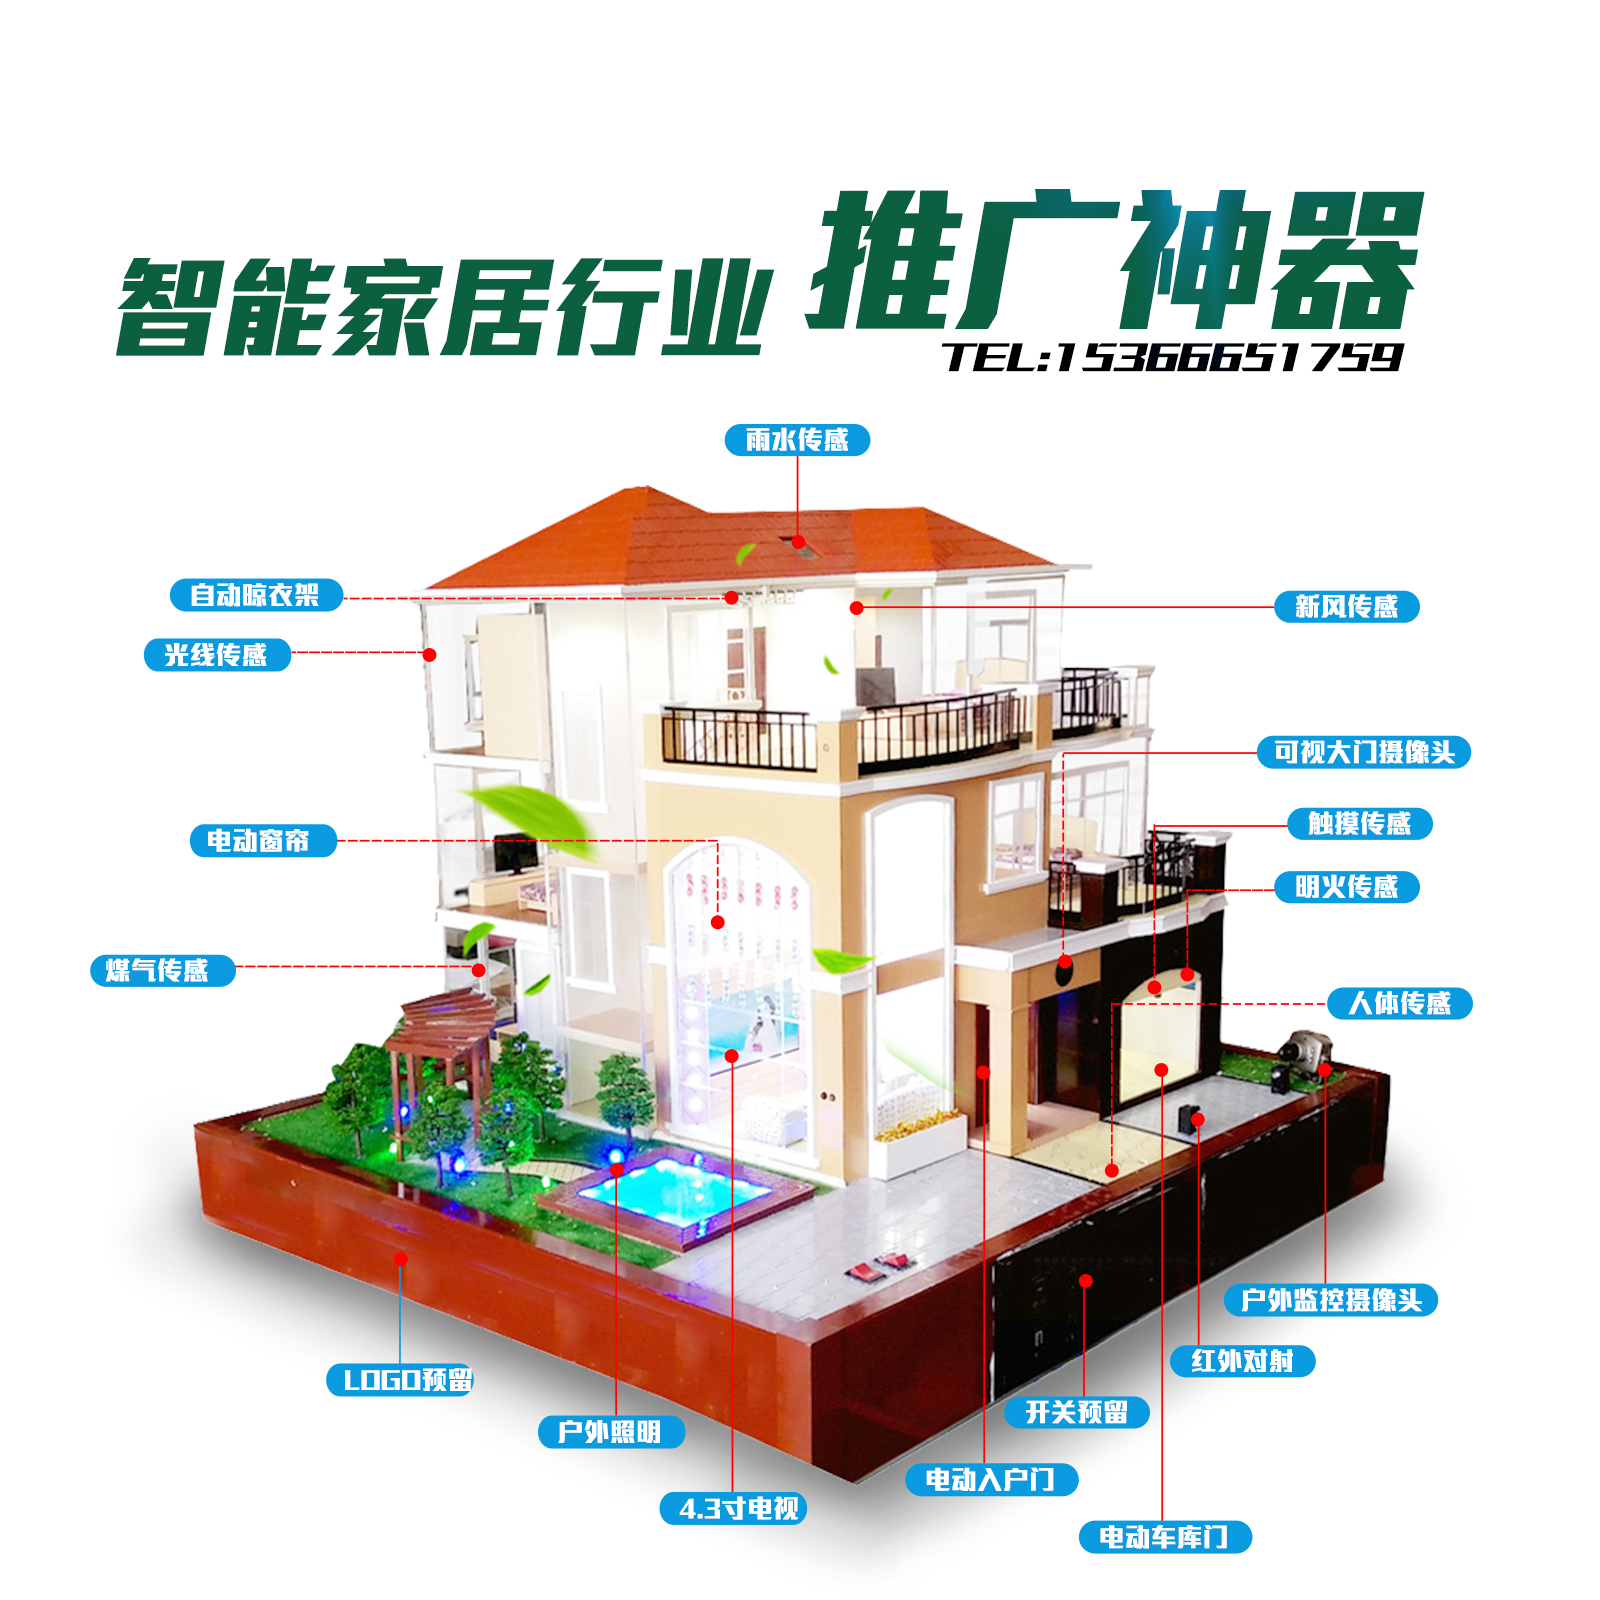 江苏智能家居公司 智能家居模型工厂 智能家居演示模型 别墅模型